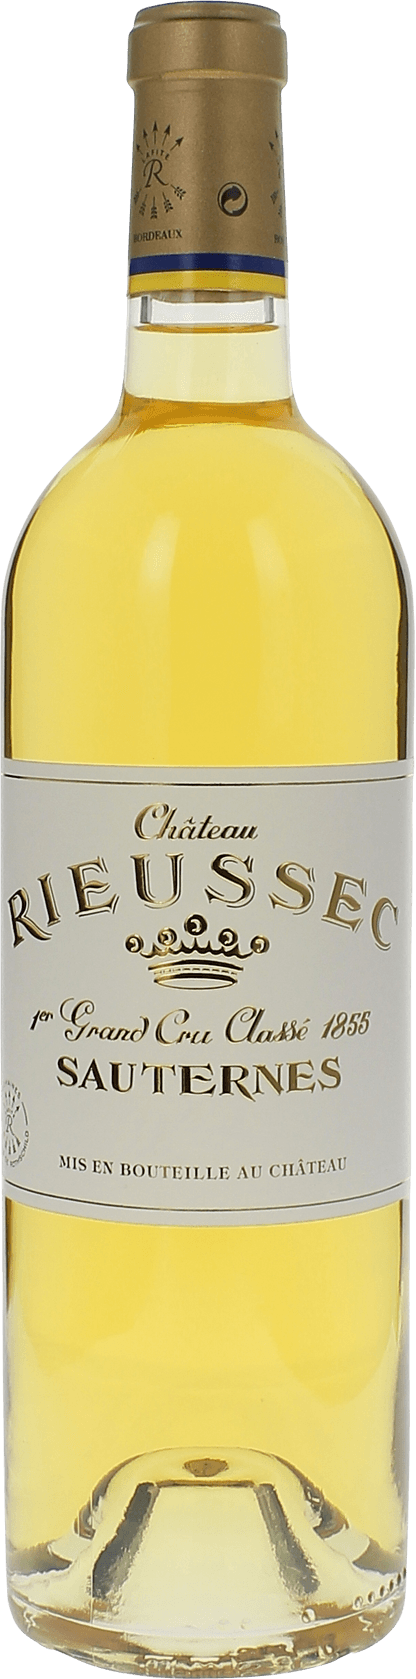 Rieussec 1975 1er cru Sauternes, Bordeaux blanc